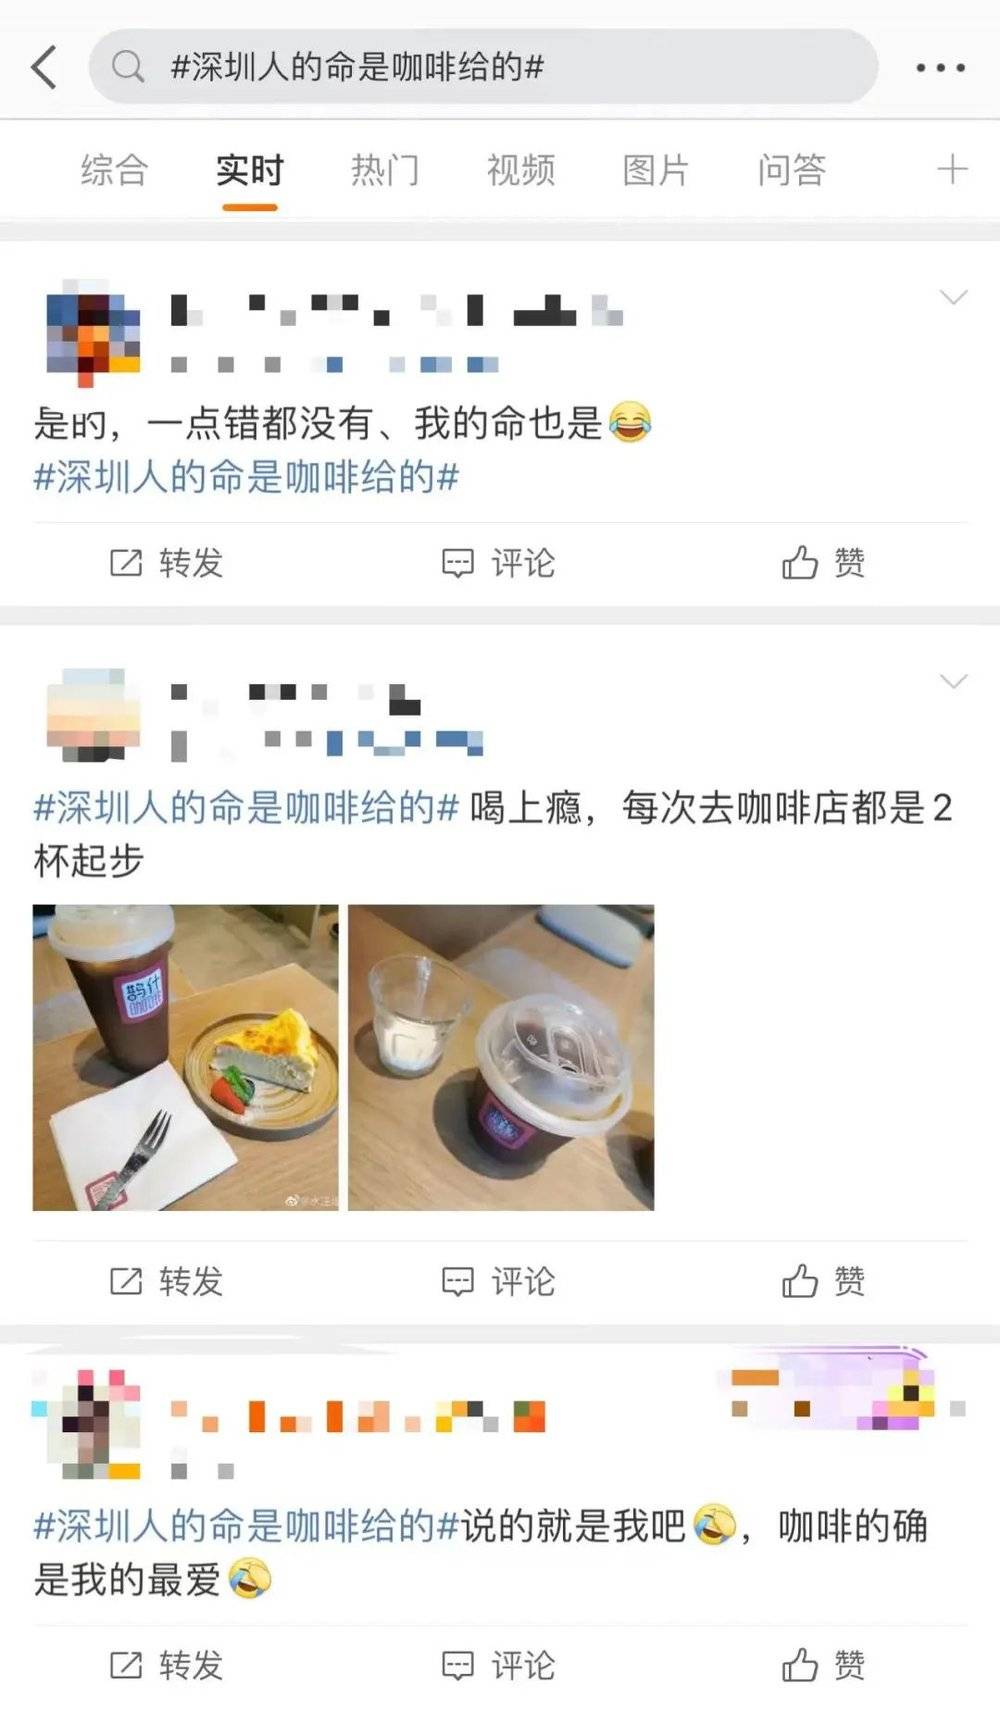 △ “深圳人的命都是咖啡给的”曾火上热搜  图源：微博